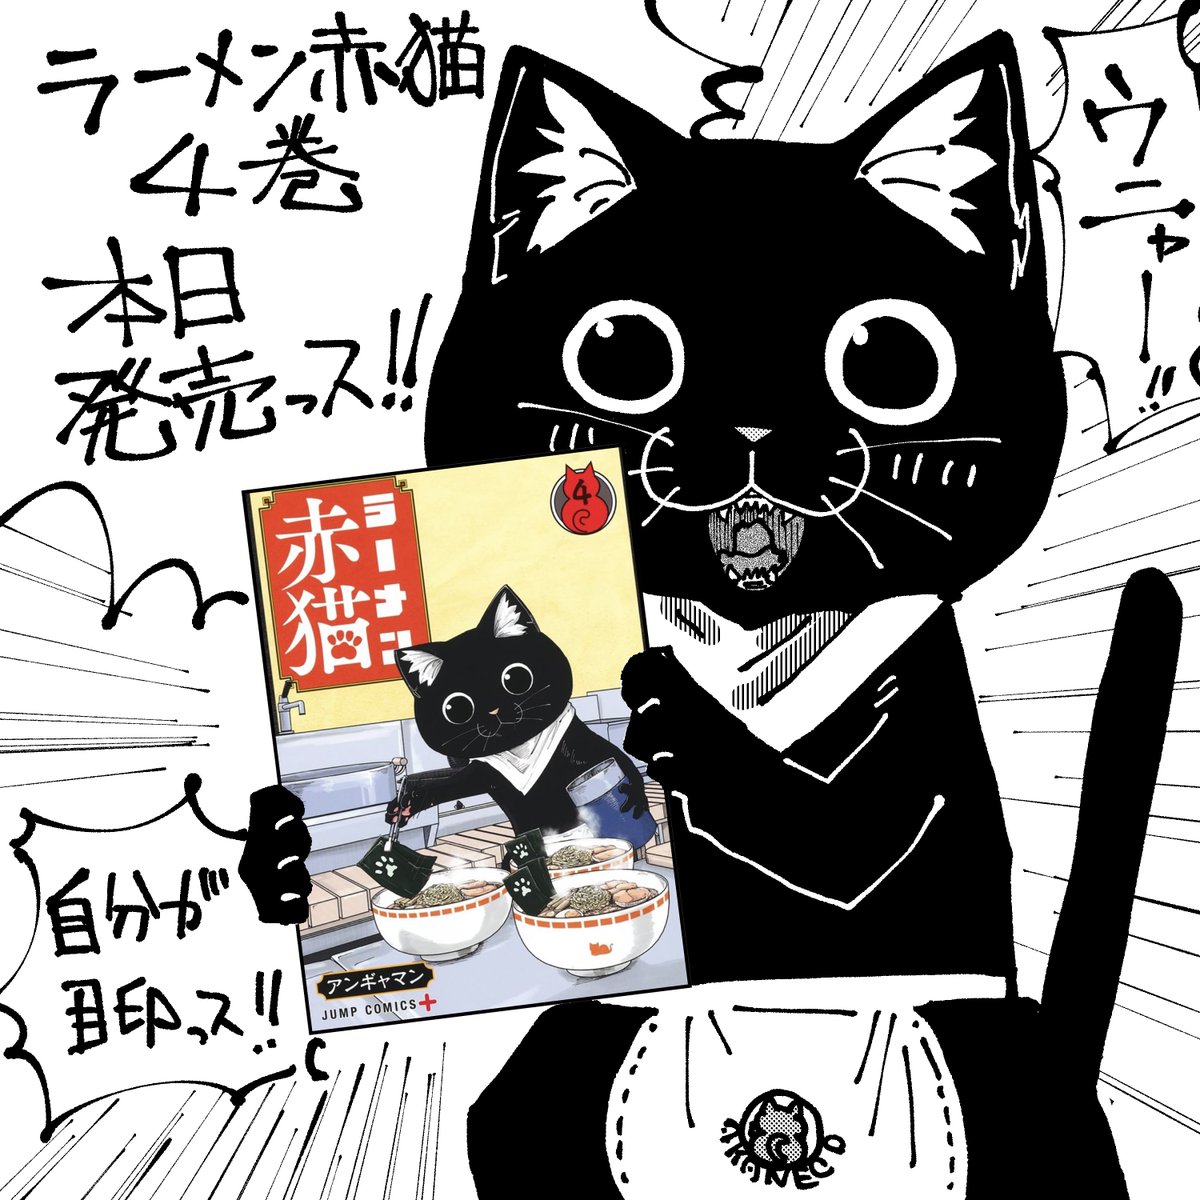 RT @ANGYAMAN: ラーメン赤猫4巻 本日発売です! 